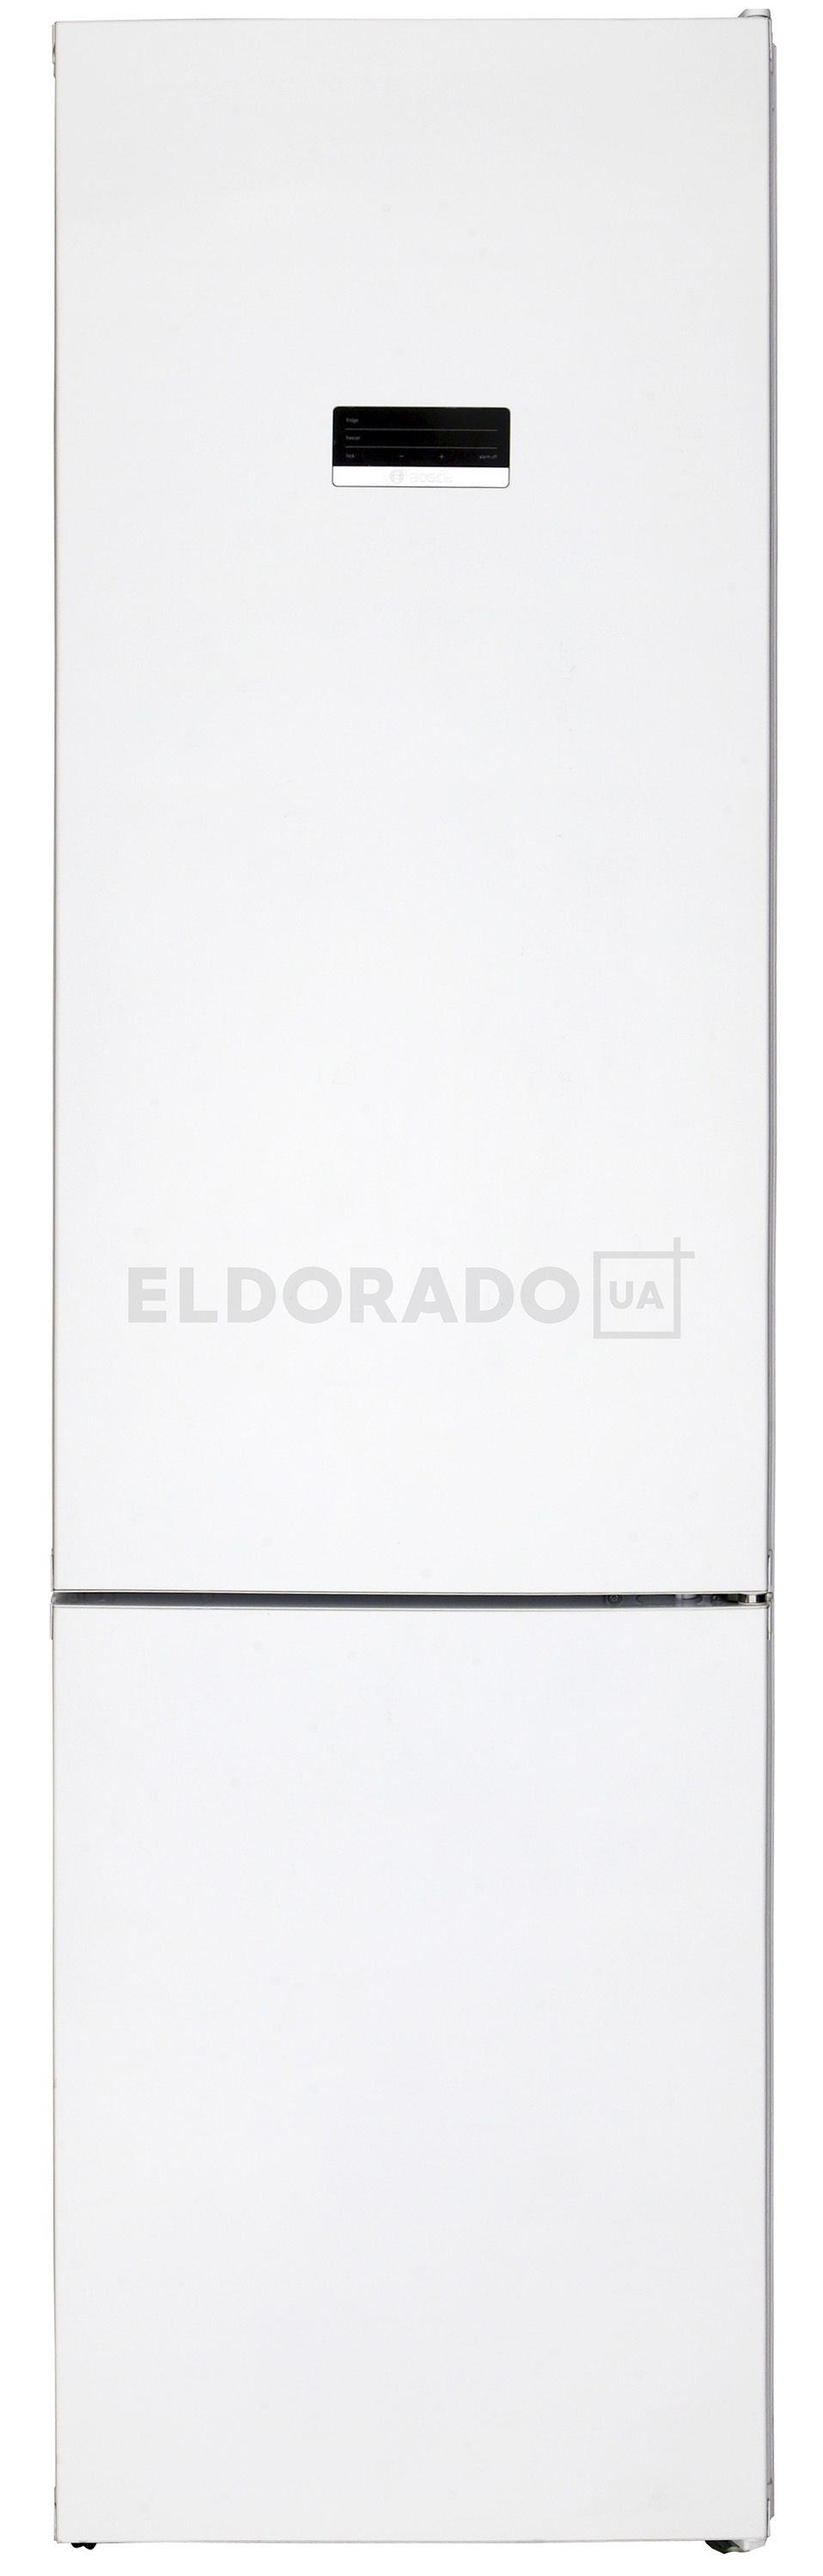 Акція на Холодильник BOSCH KGN 39 XW 326 від Eldorado